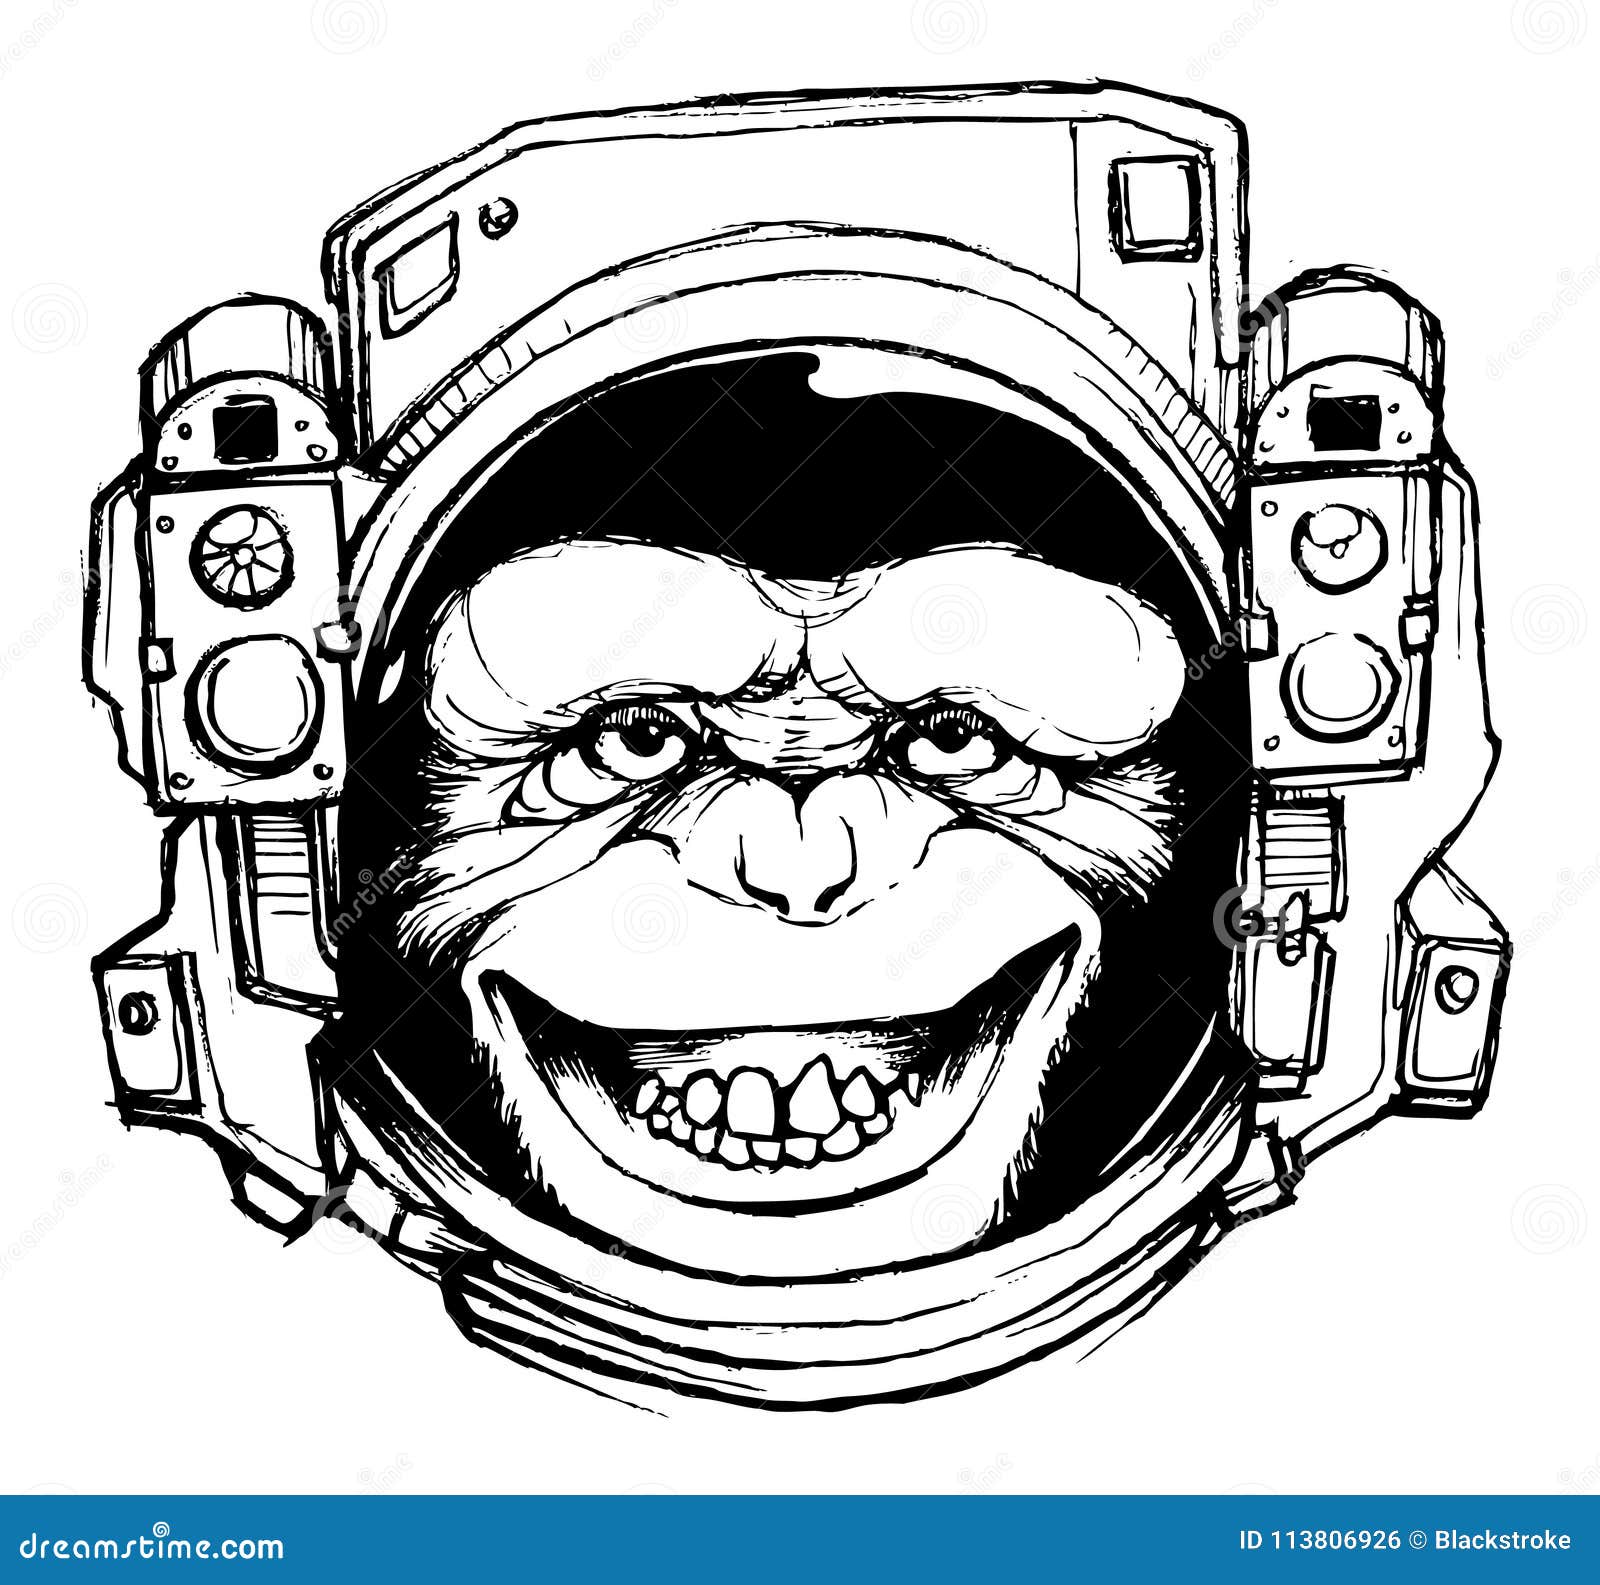 space monkey t shirt / poster  file Ã¢â¬â stock  Ã¢â¬â stock  file